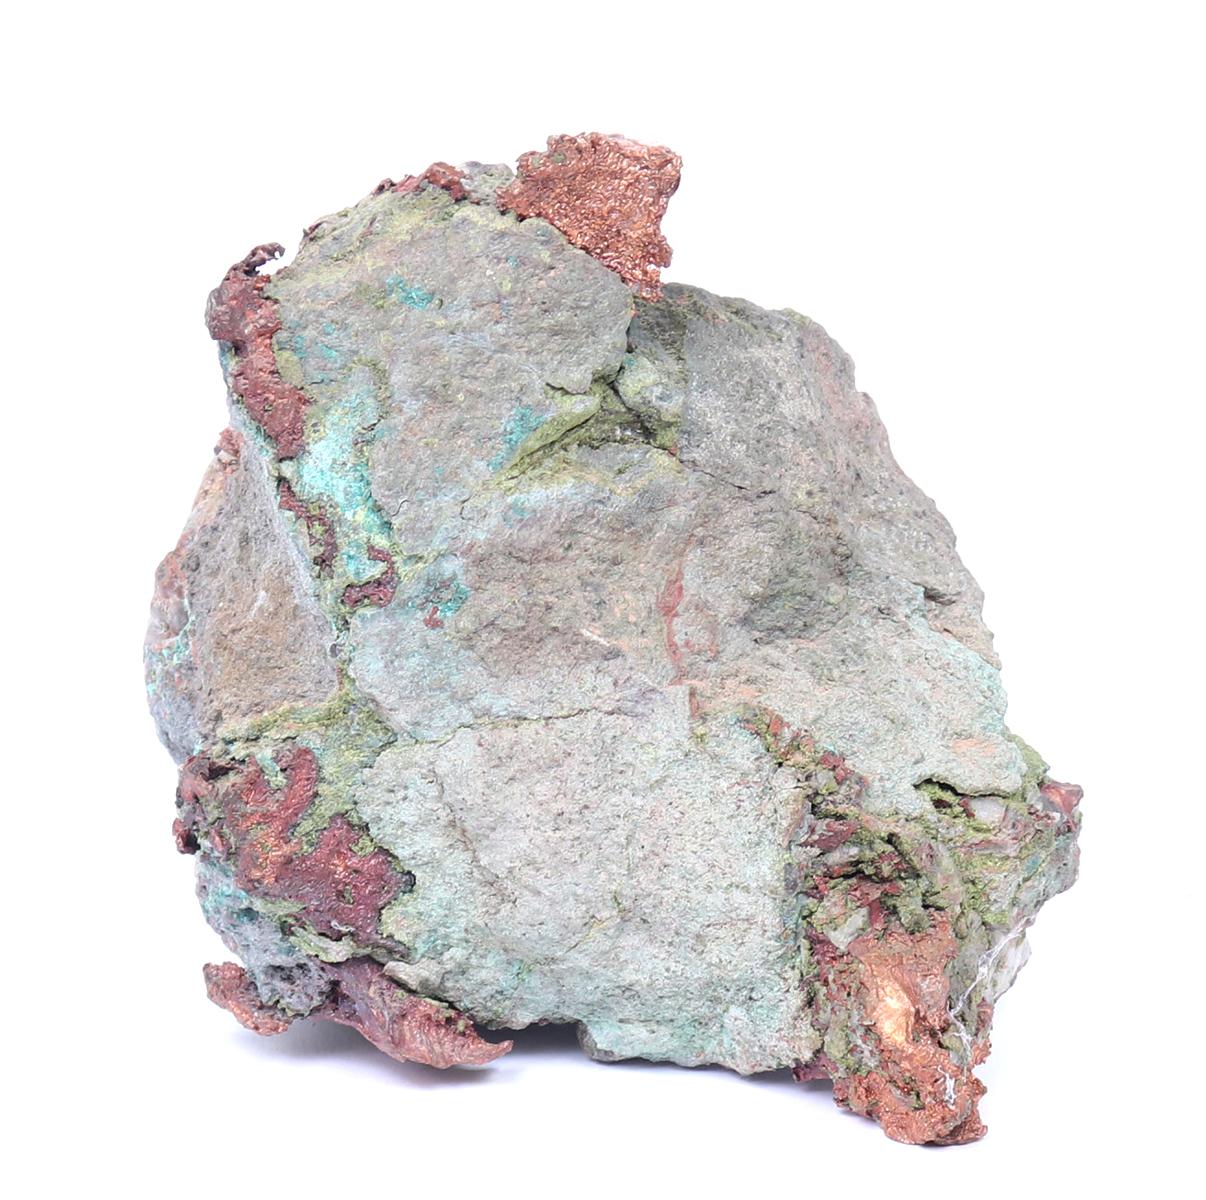 Fine Raw Copper Mineral Specimen, Over 3000 grams